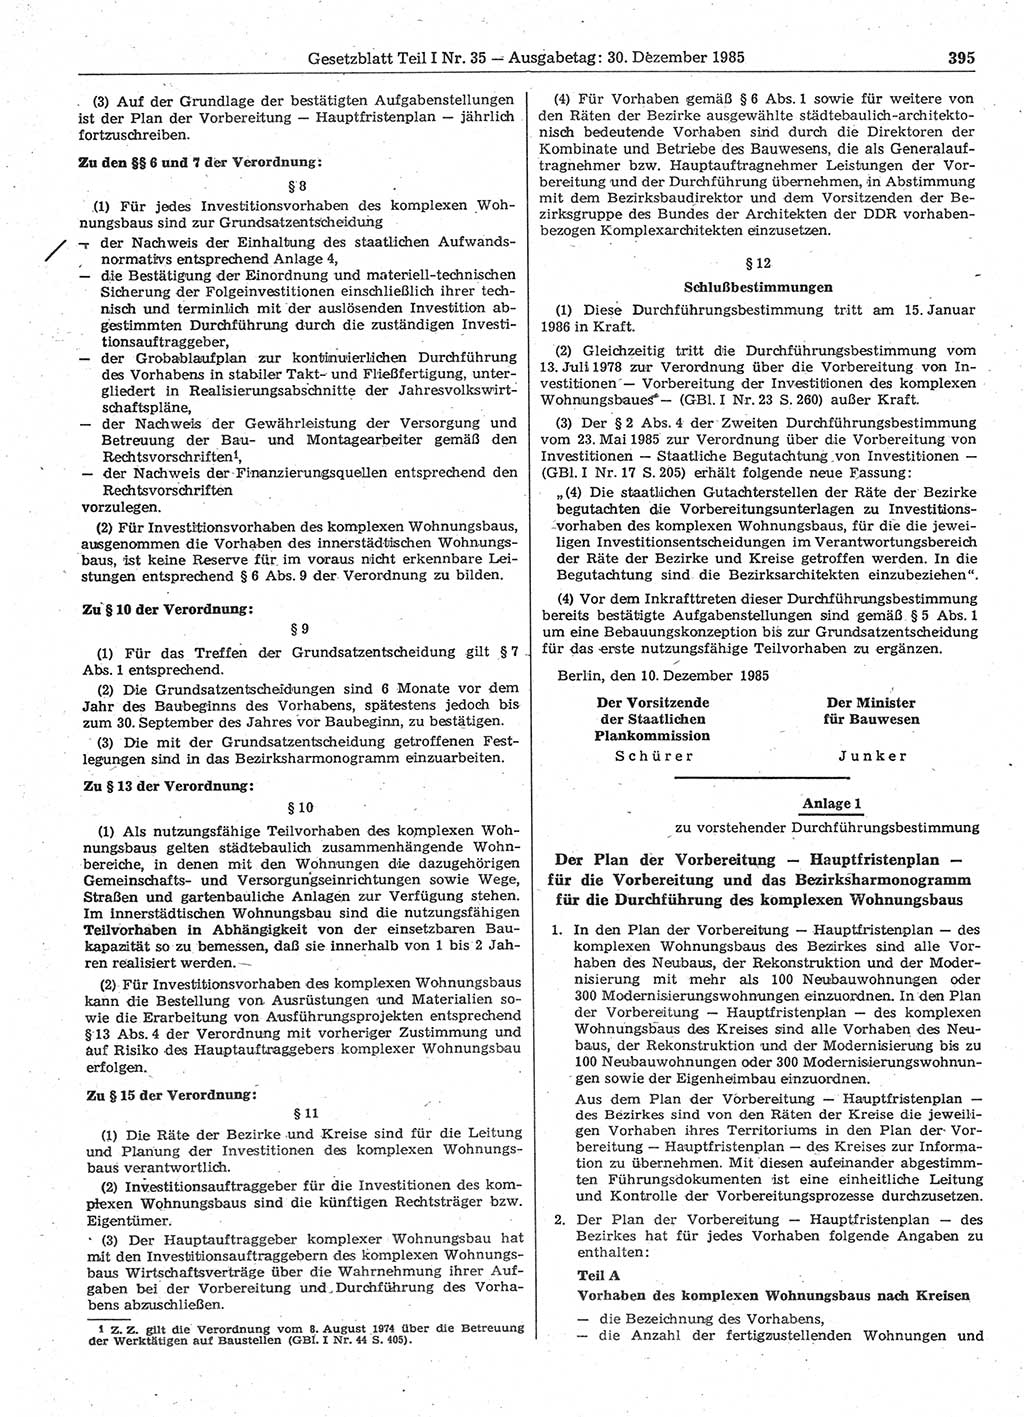 Gesetzblatt (GBl.) der Deutschen Demokratischen Republik (DDR) Teil Ⅰ 1985, Seite 395 (GBl. DDR Ⅰ 1985, S. 395)